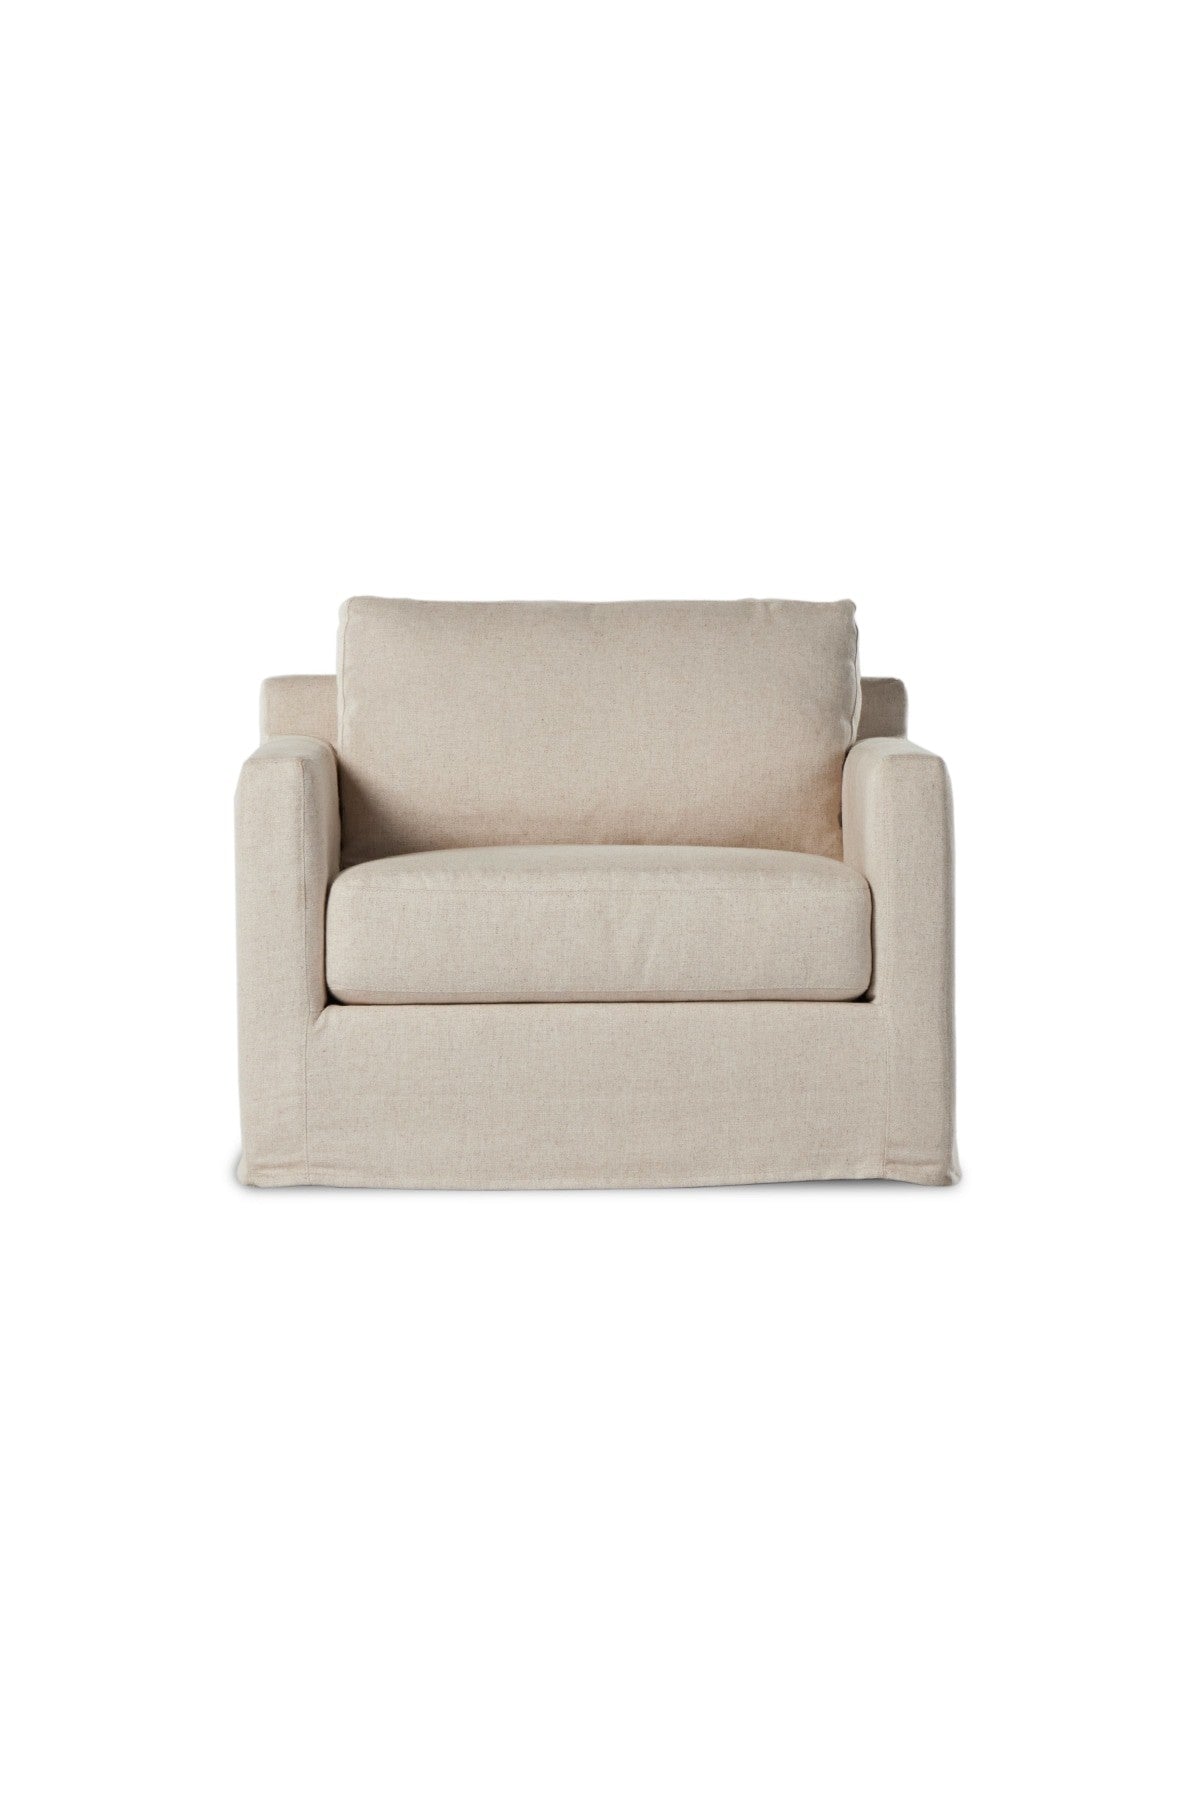 Wescott Slipcover Swivel Chair - Creme